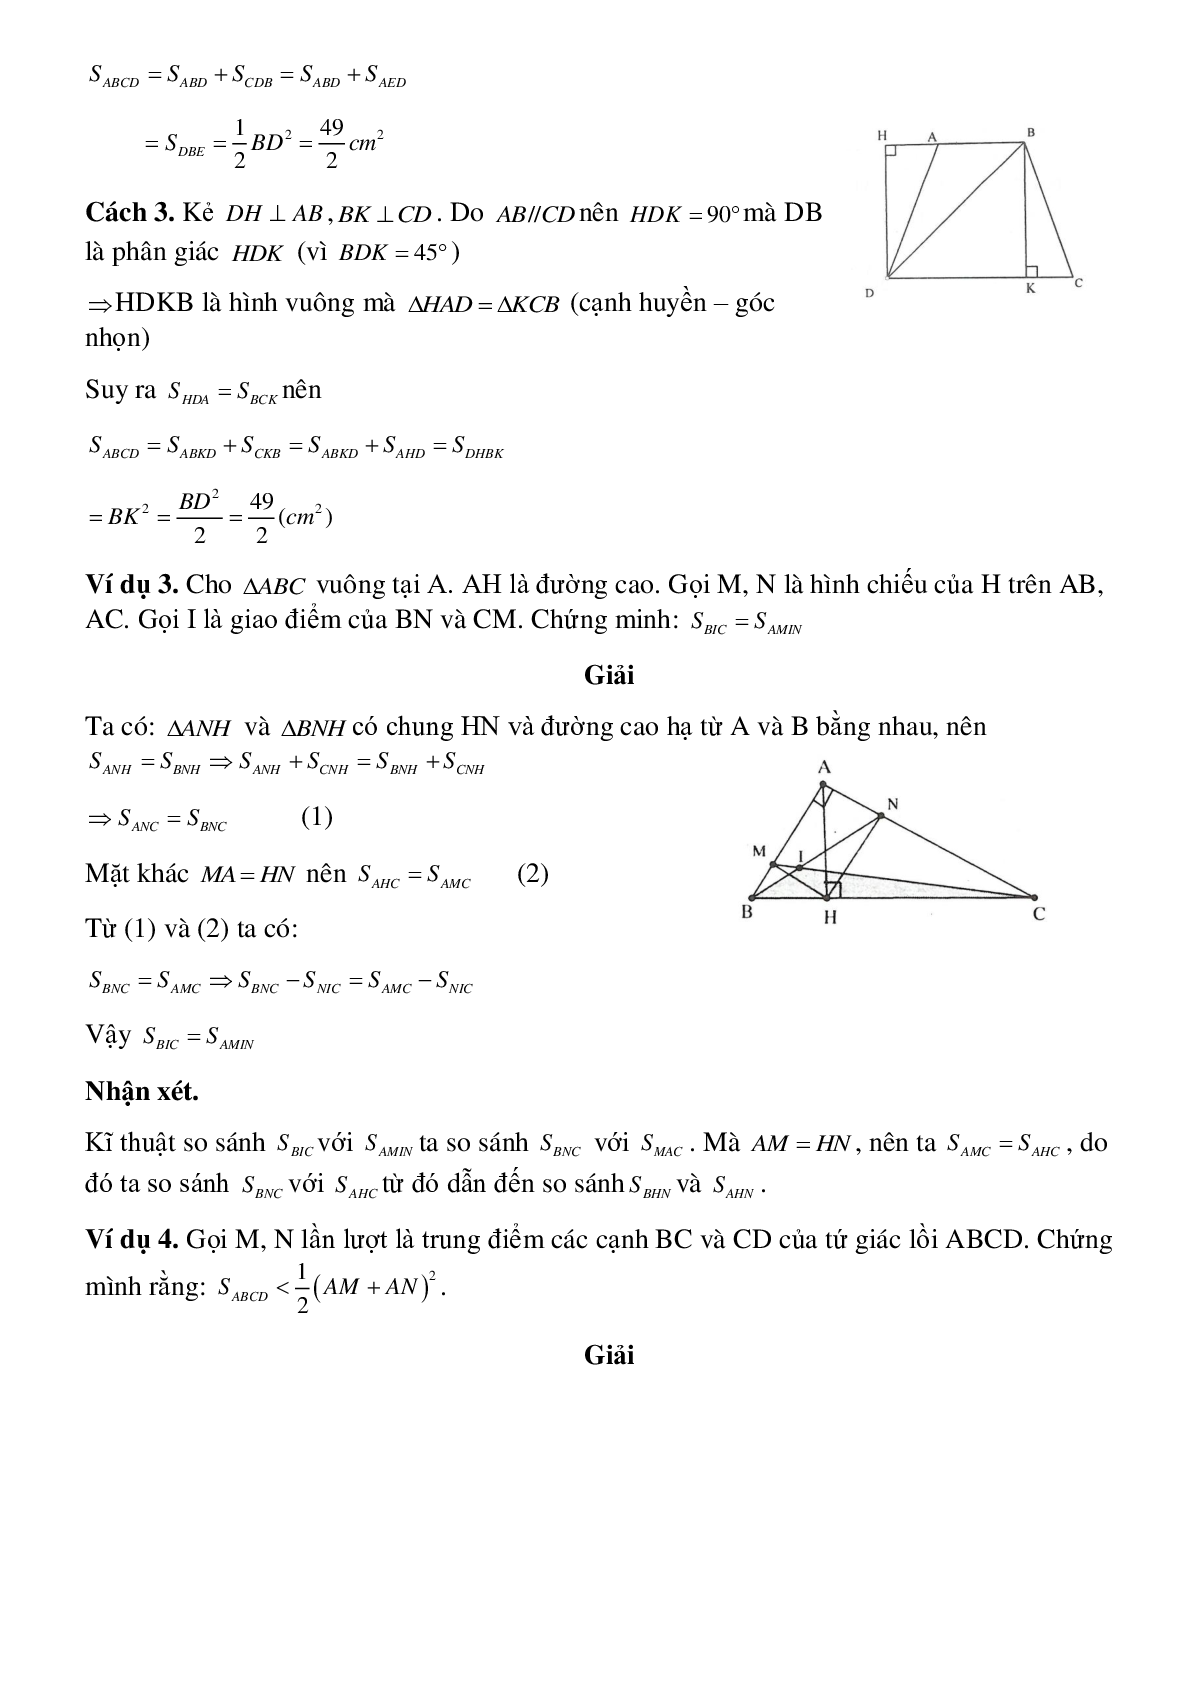 Diện tích đa giác (trang 4)